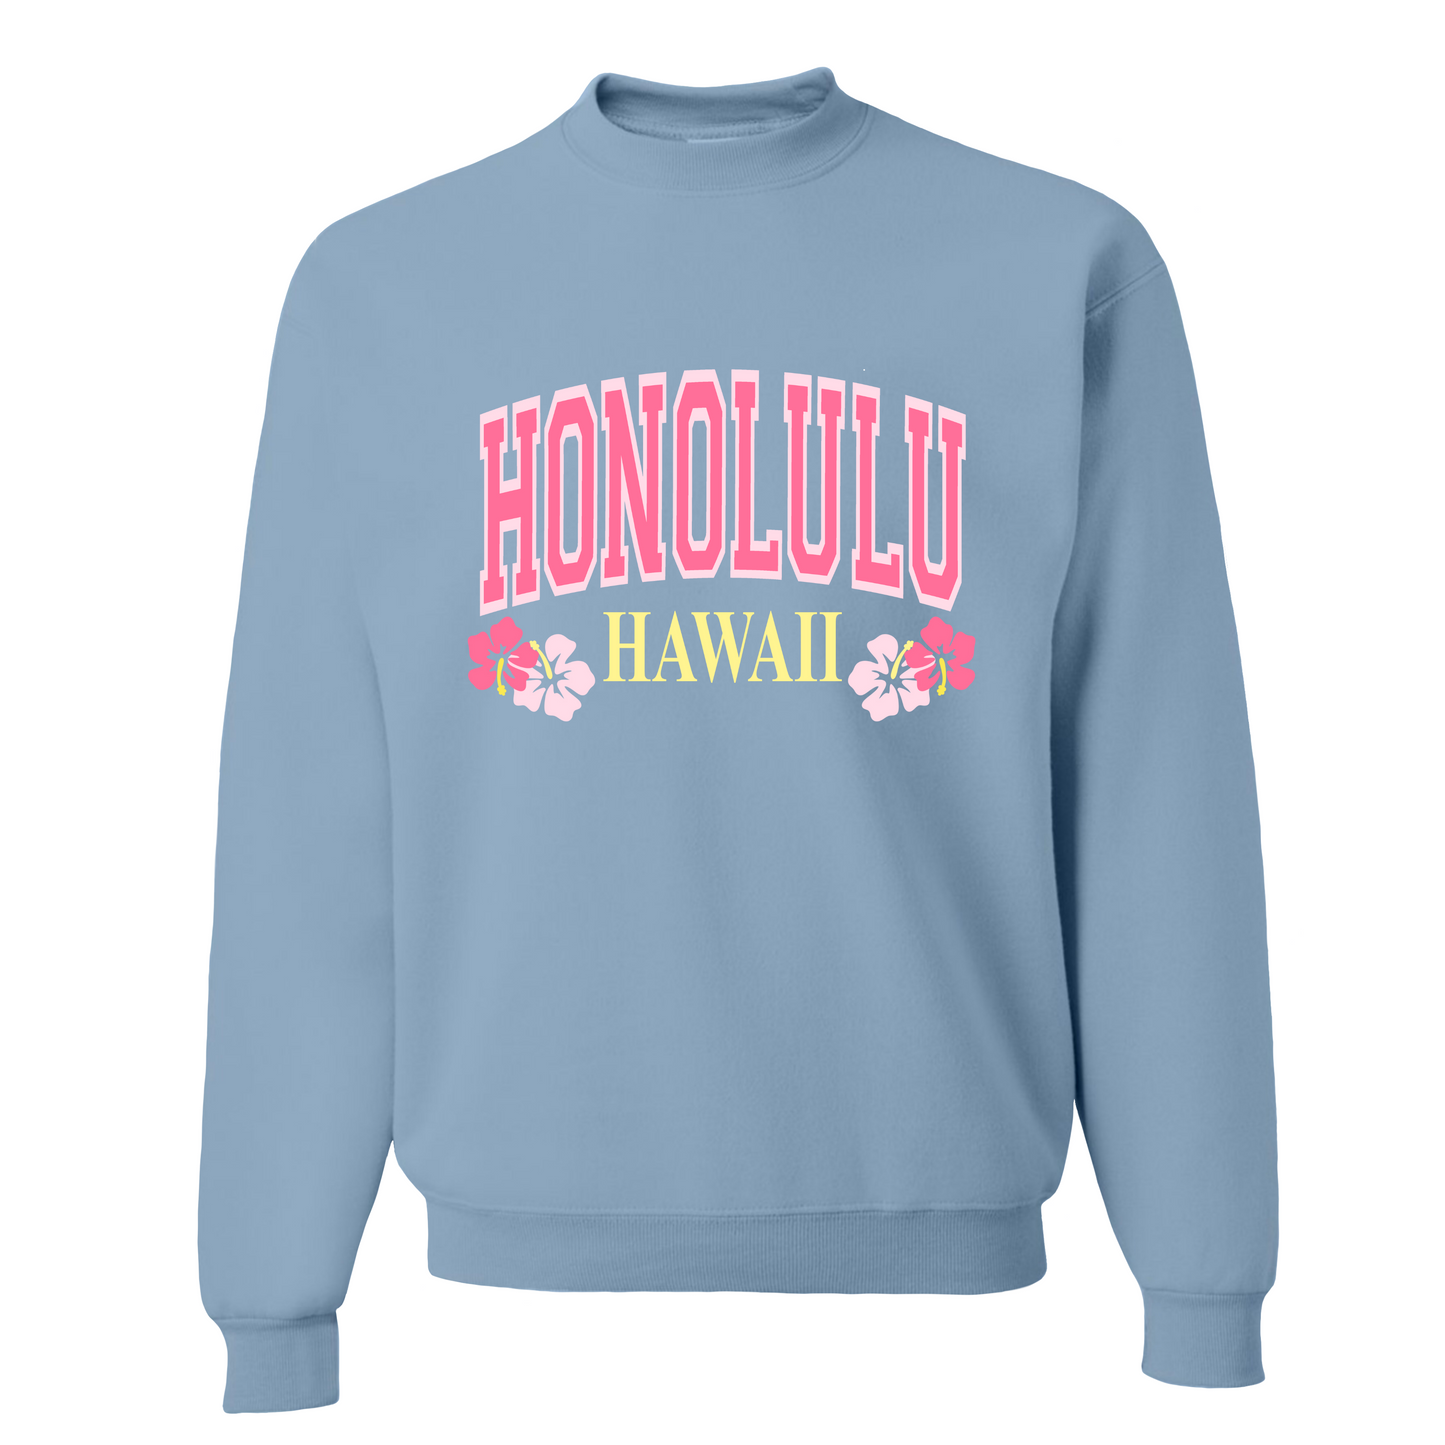 Honolulu Hawaii Crewneck